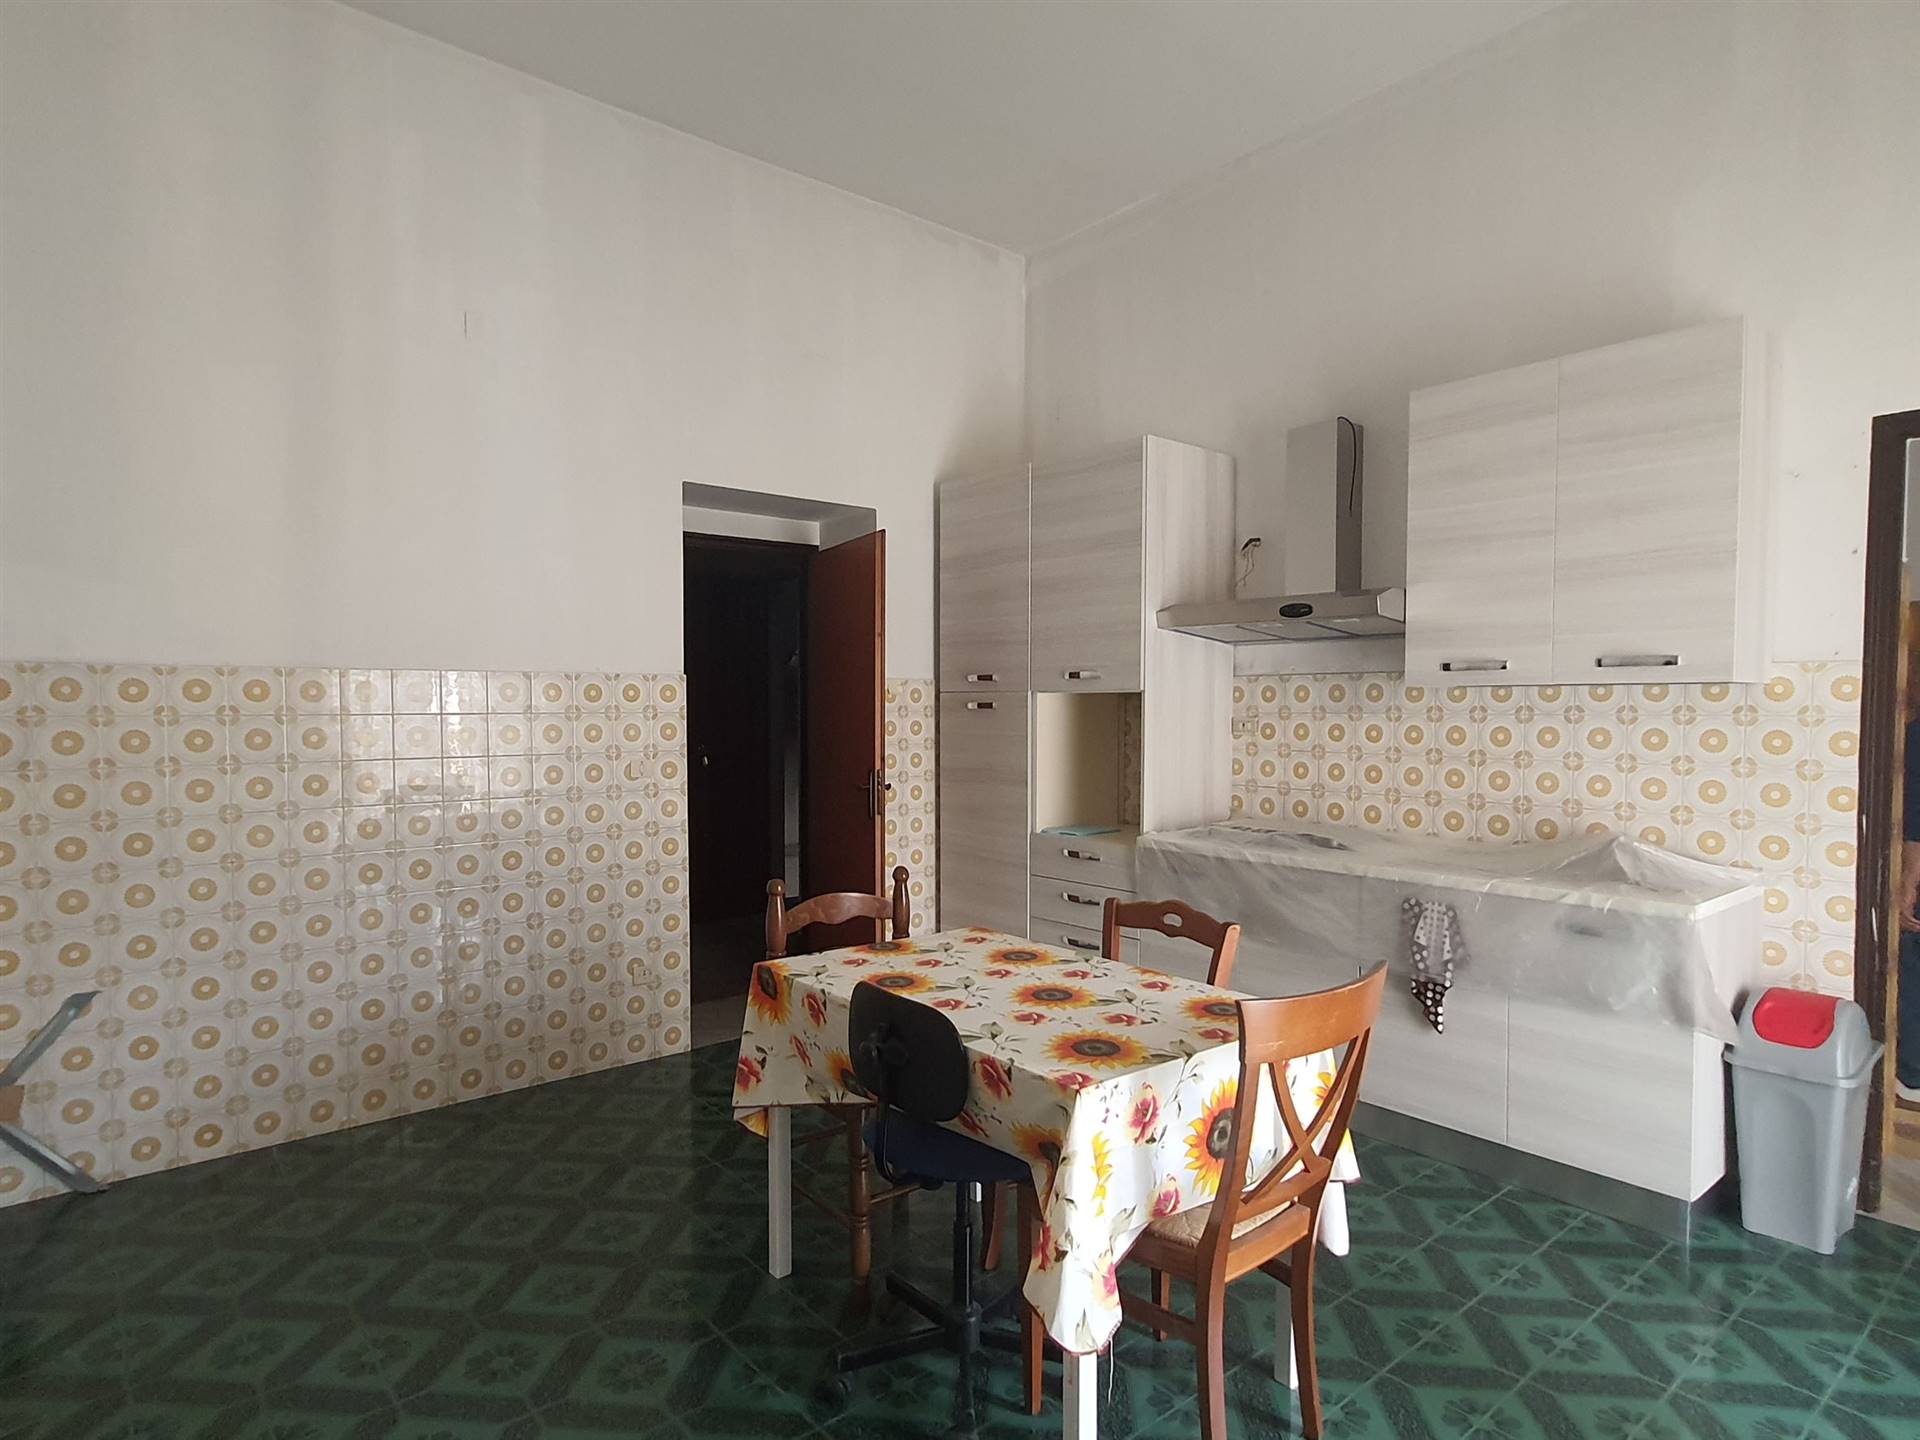 Appartamento in vendita a Taurianova, 4 locali, prezzo € 50.000 | PortaleAgenzieImmobiliari.it